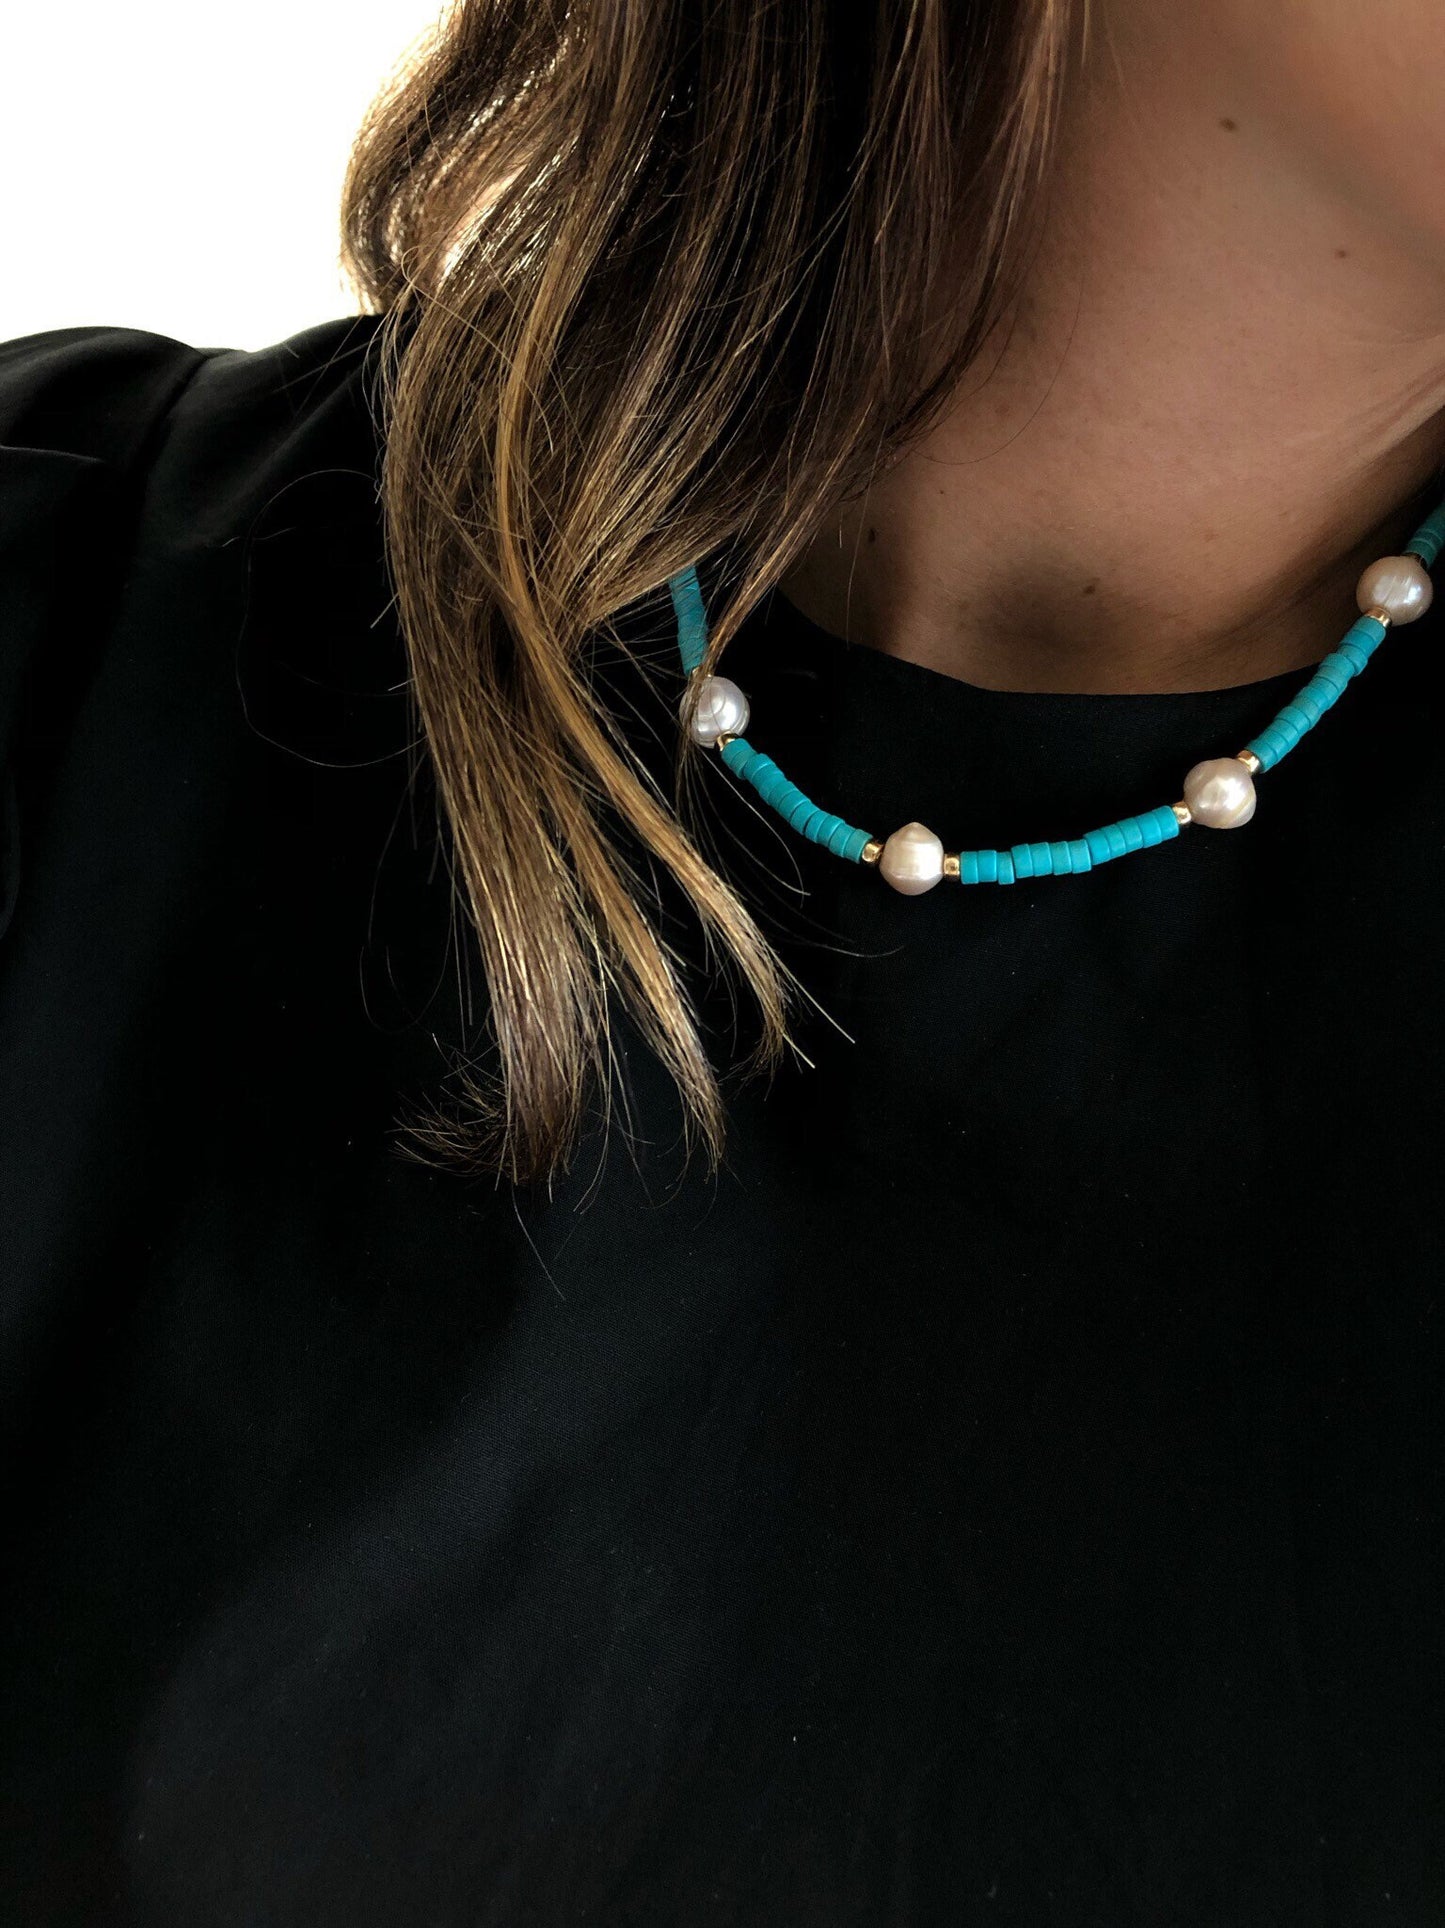 BONDI Pearl Turquoise Necklace